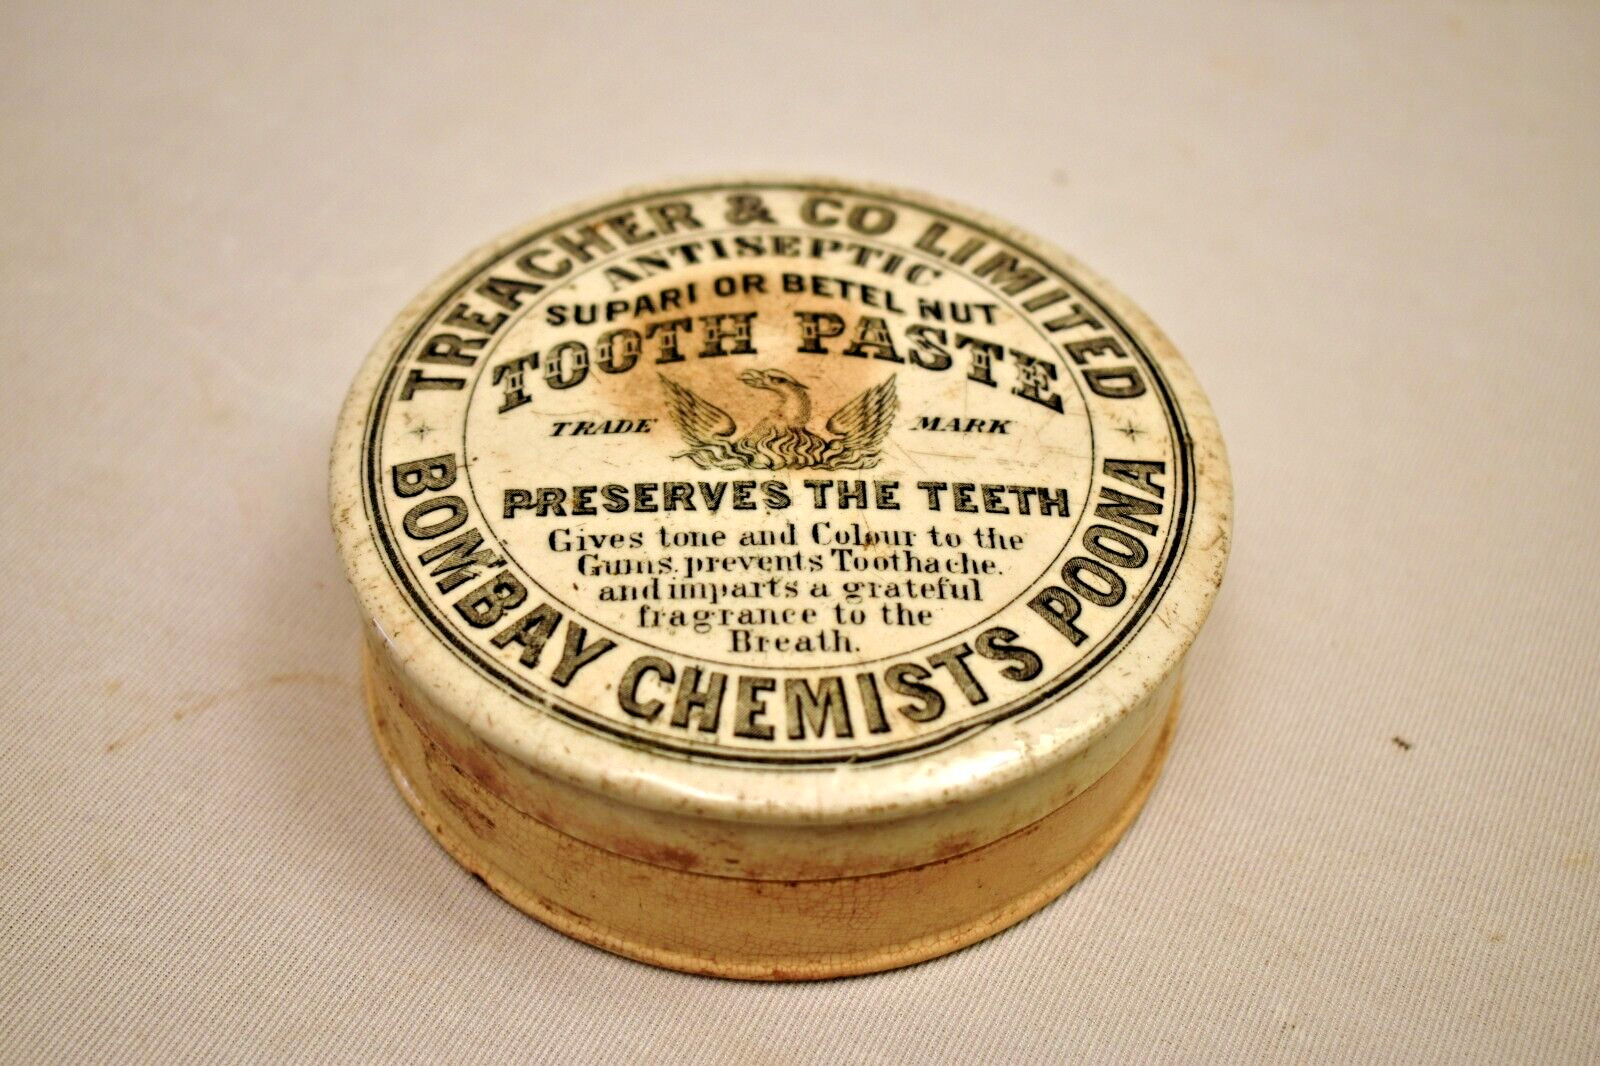 Antique Betel Nut Toothpaste Pot Treachers & Co Ltd Bombay Chemists Poona Supar